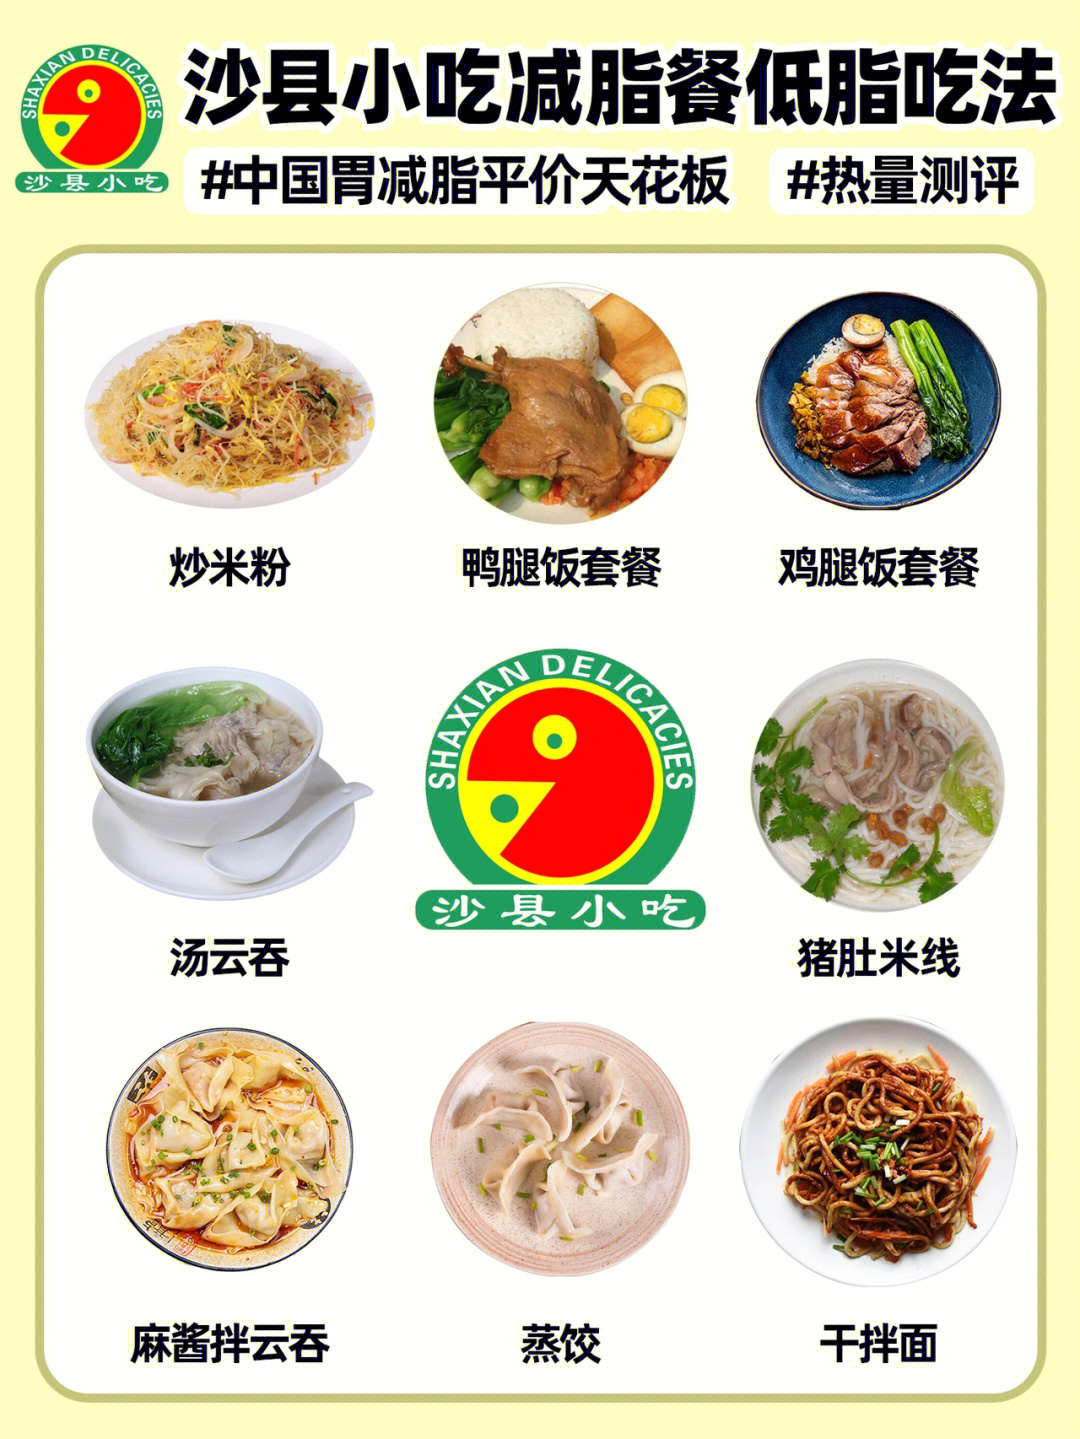 沙县小吃中国胃的减脂餐,营养健康不到500卡